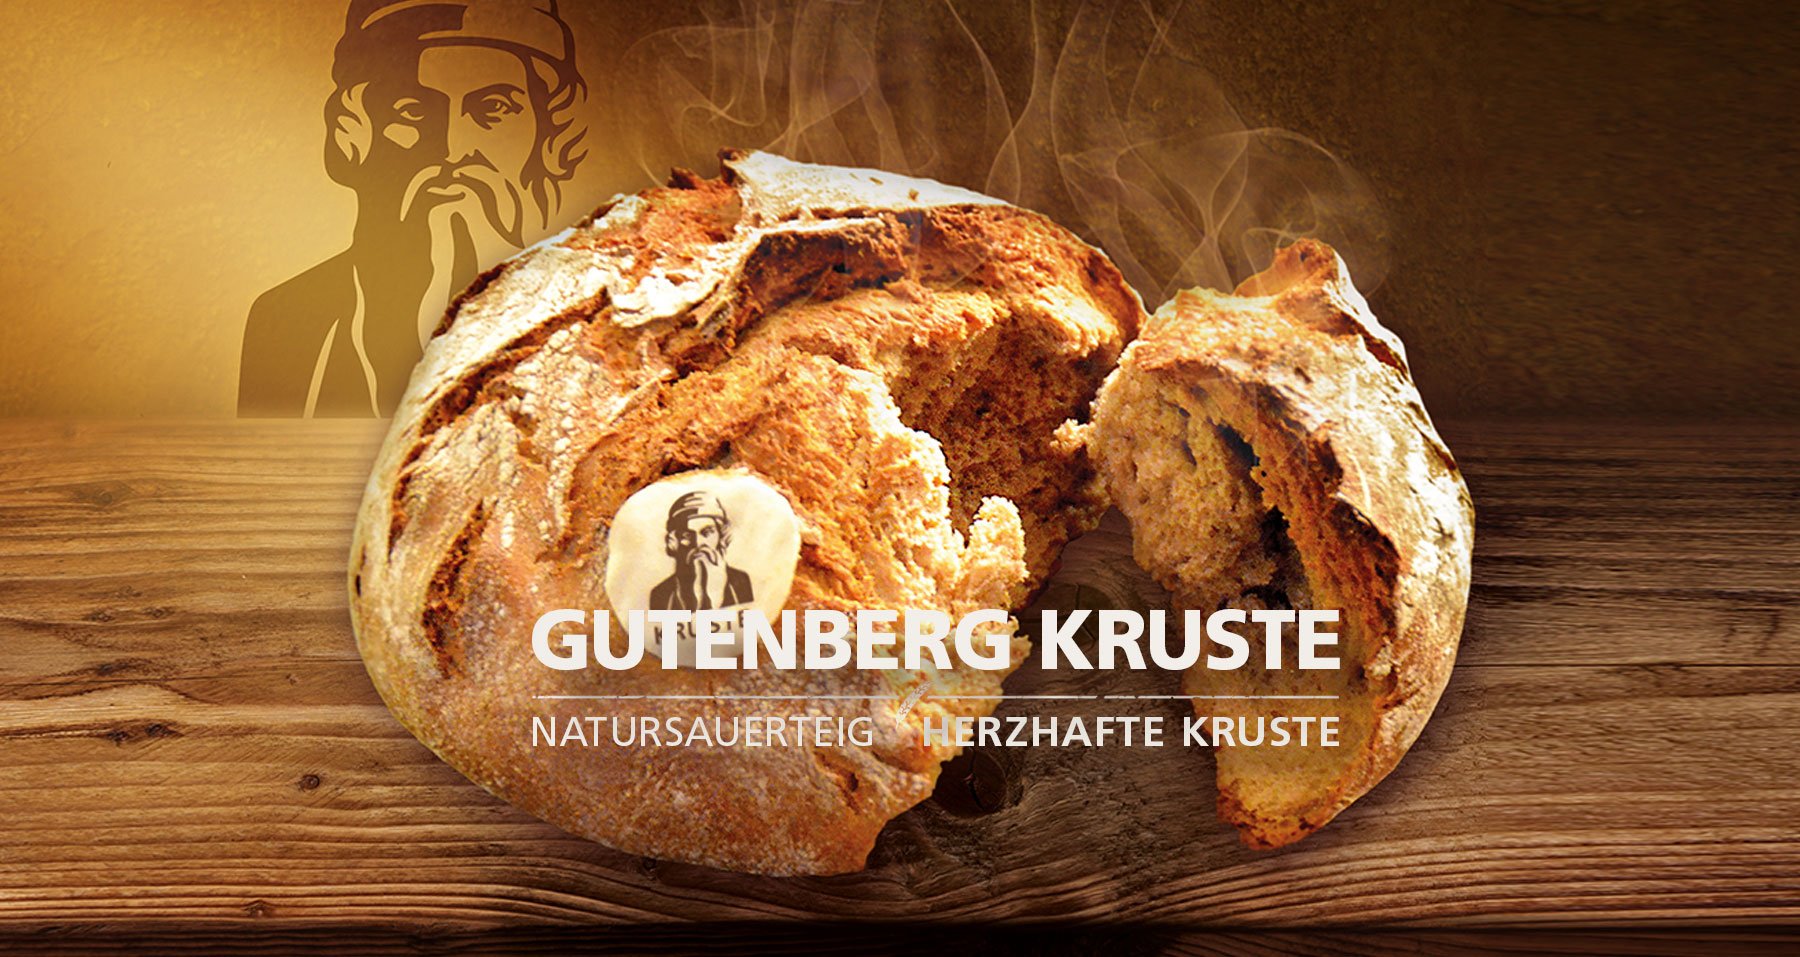 Brot Gutenbergkrust, Natursauerteig, Herzhafte Kruste